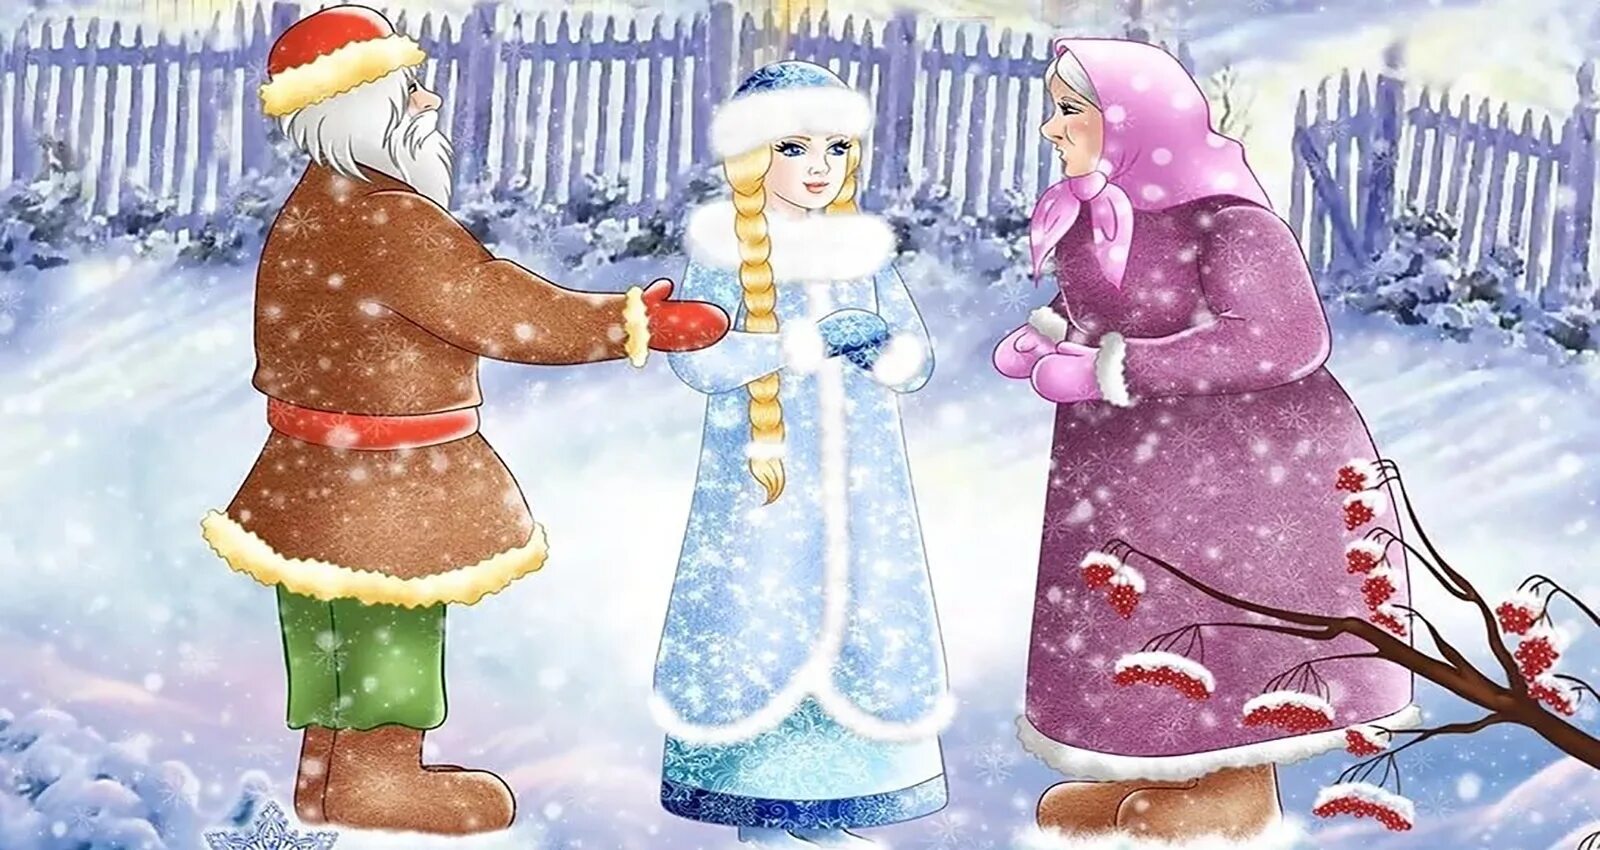 Русской народной сказки снегурочка